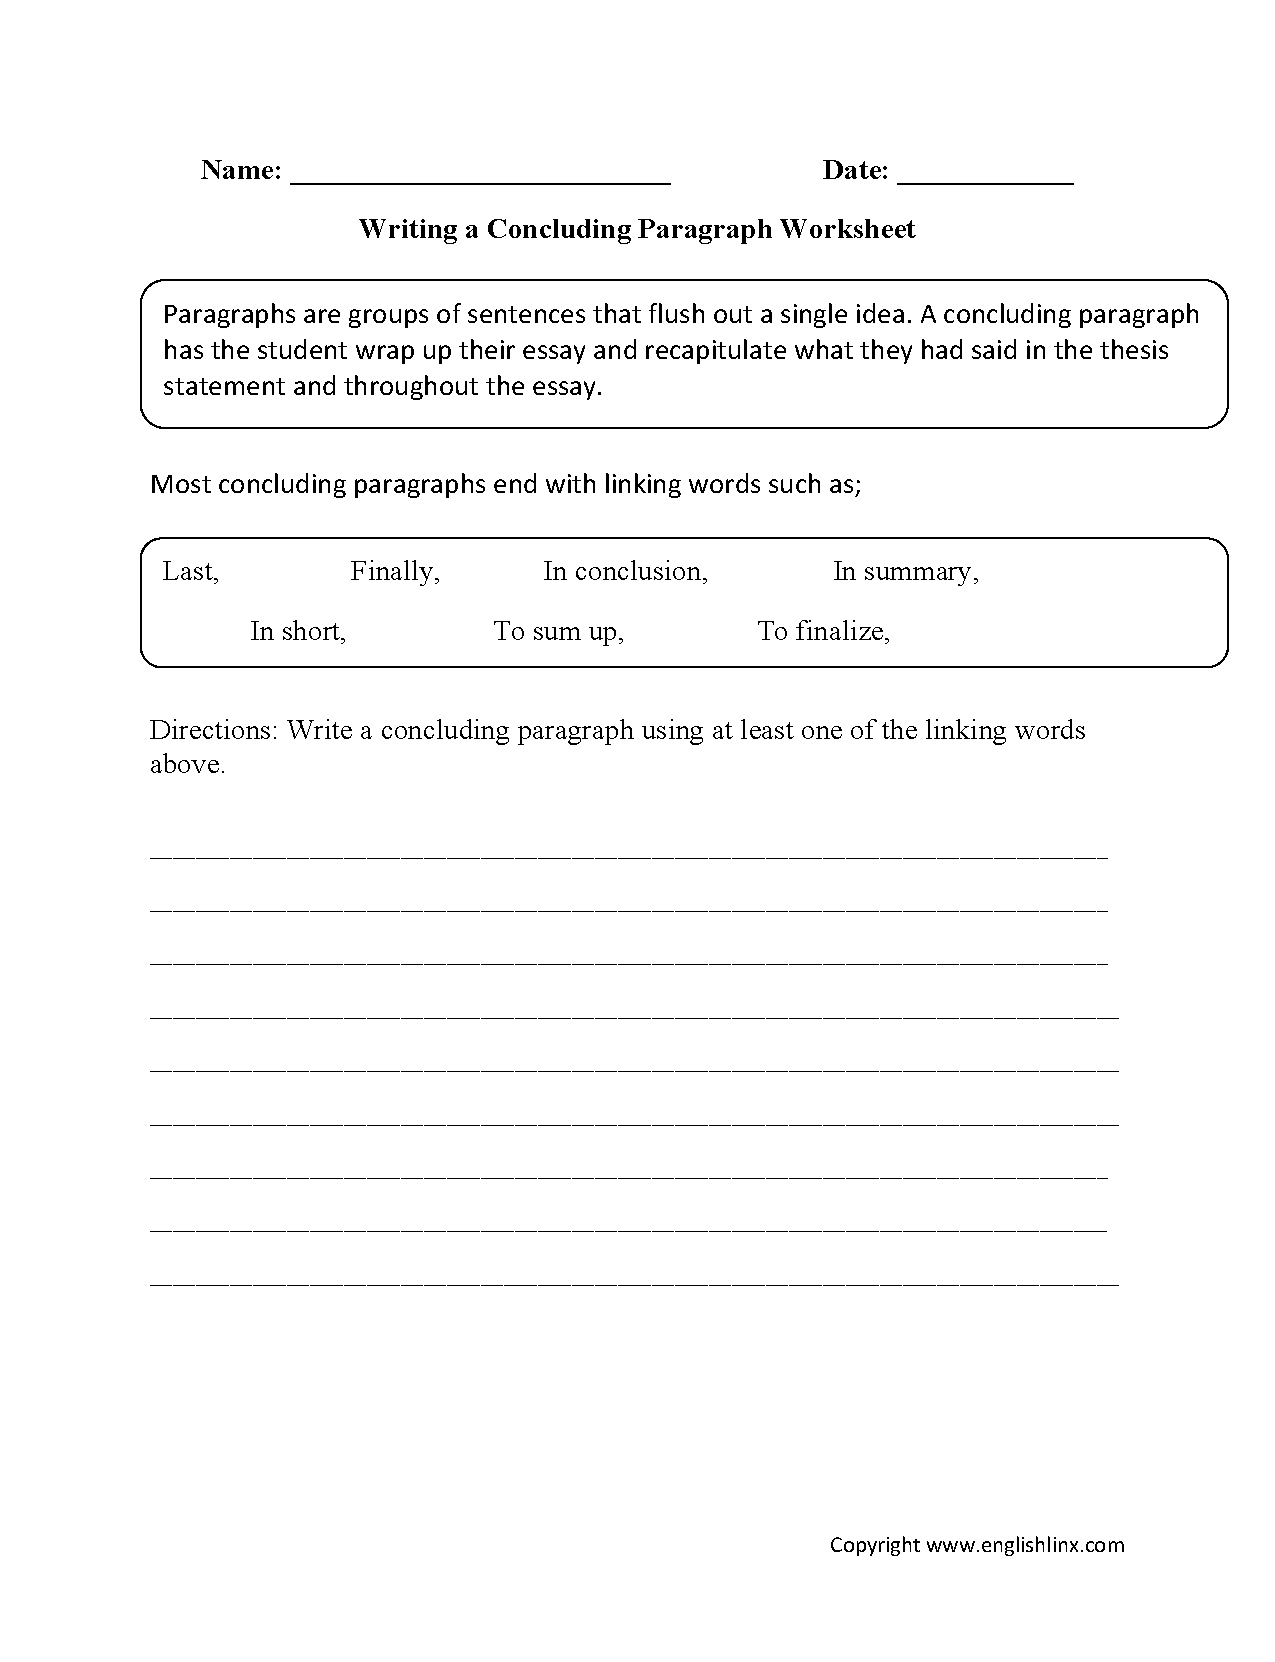 Writing Worksheets | Paragraph Writing Worksheets